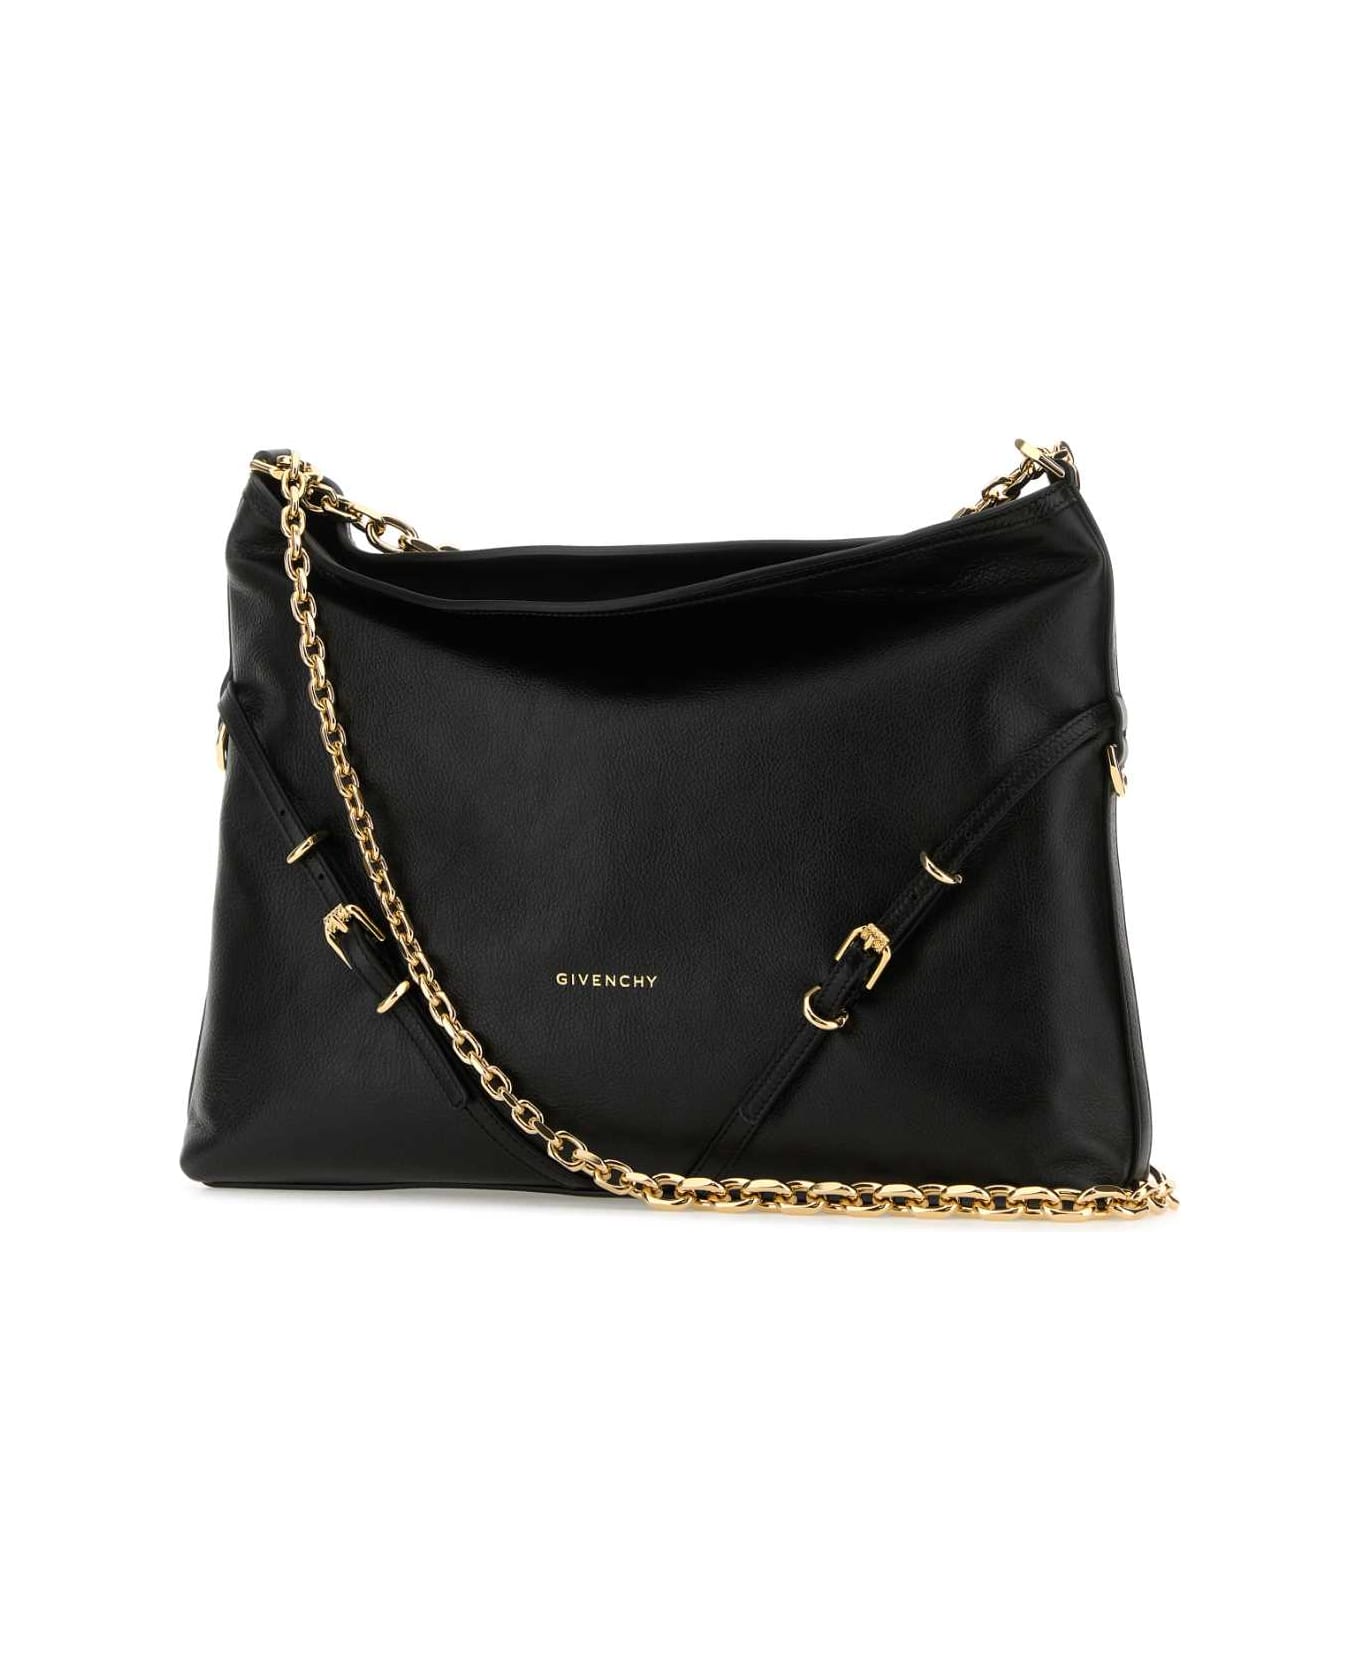 Givenchy Black Leather Voyou Chain Shoulder Bag - BLACK